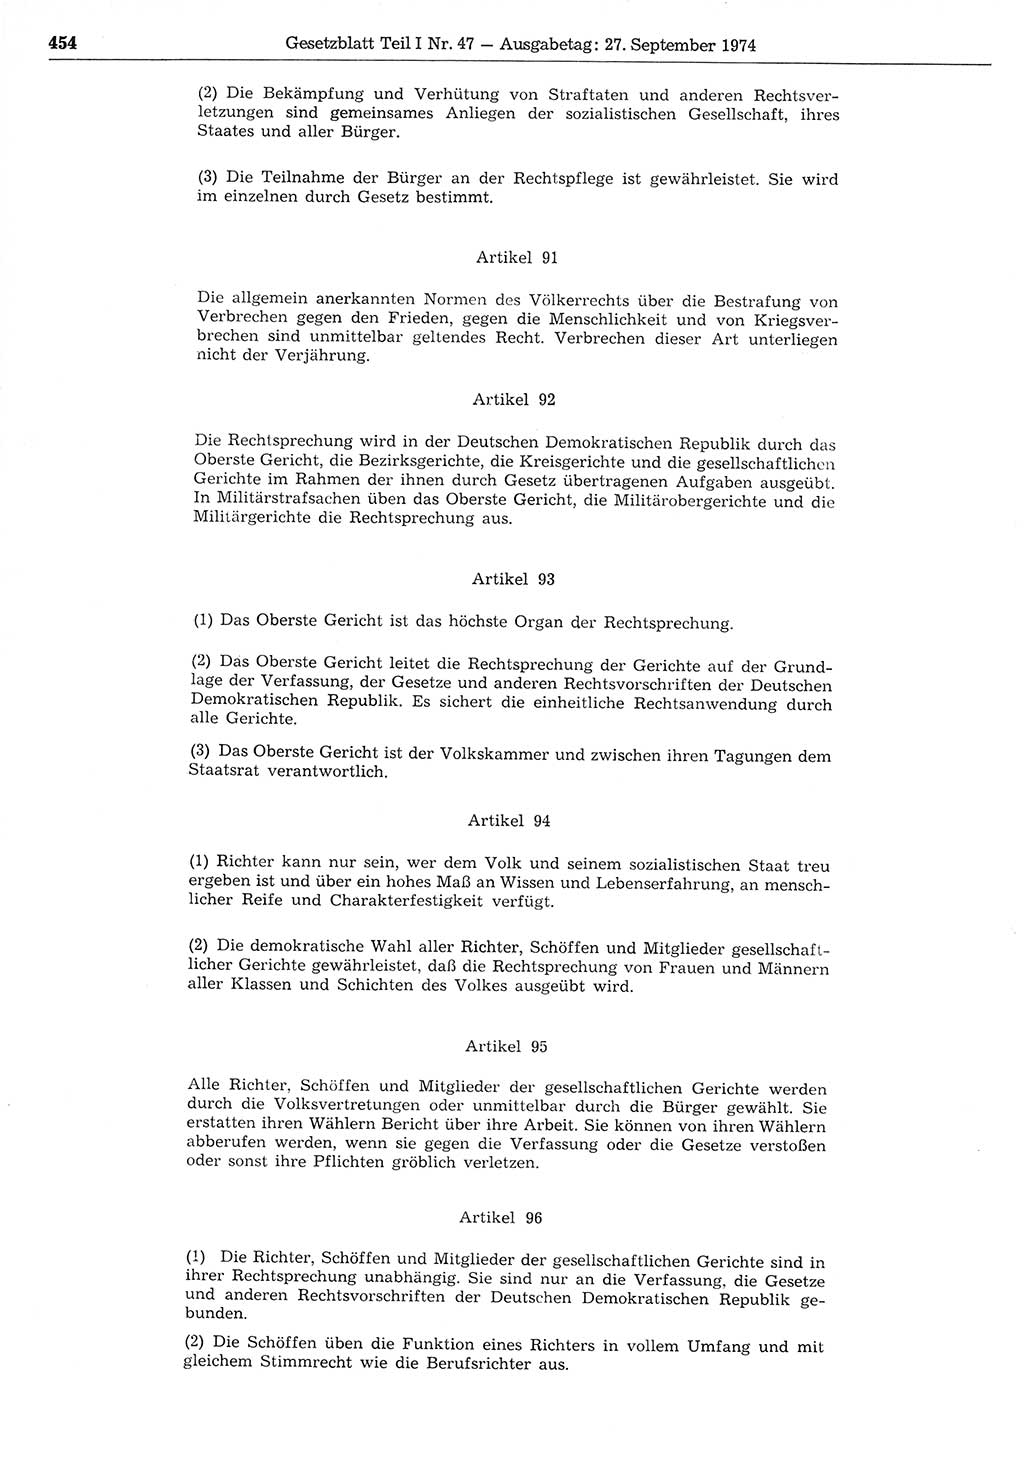 Gesetzblatt (GBl.) der Deutschen Demokratischen Republik (DDR) Teil Ⅰ 1974, Seite 454 (GBl. DDR Ⅰ 1974, S. 454)